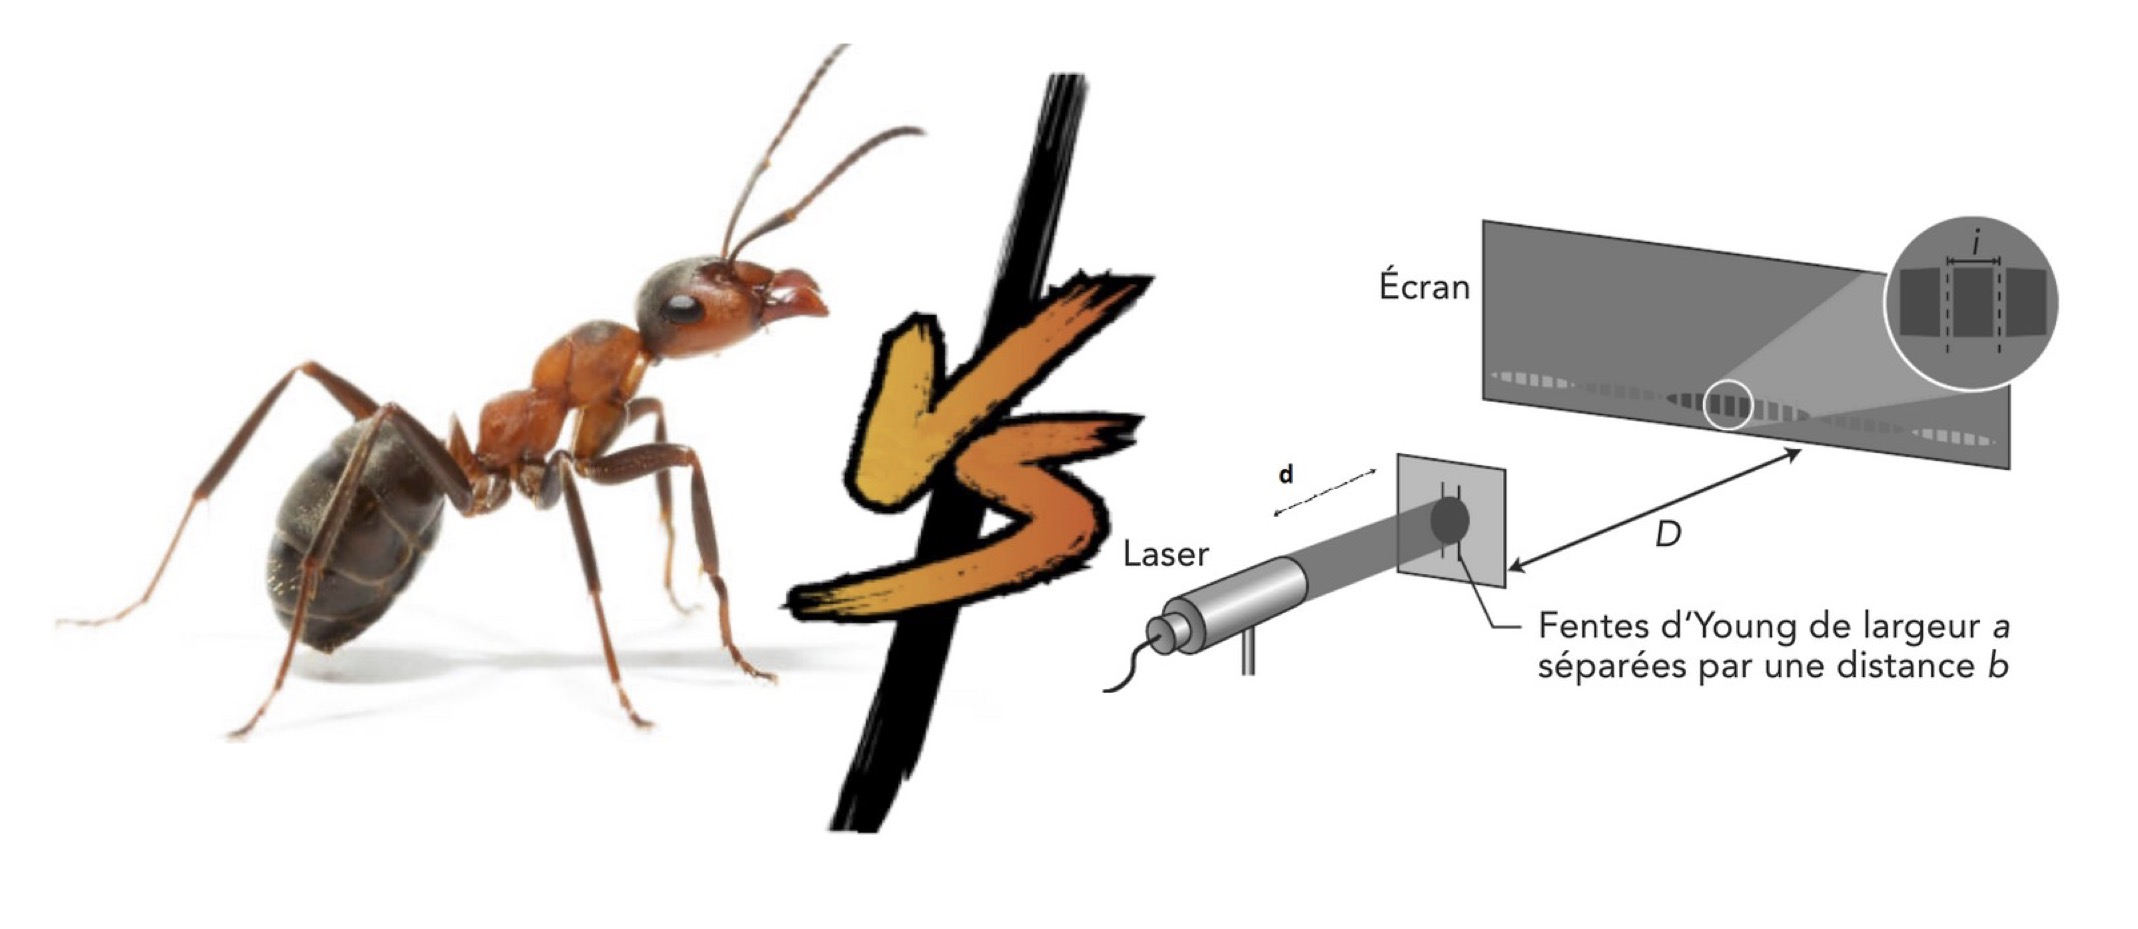 Dessin d’une fourmi et dessin d’un montage d’interférences